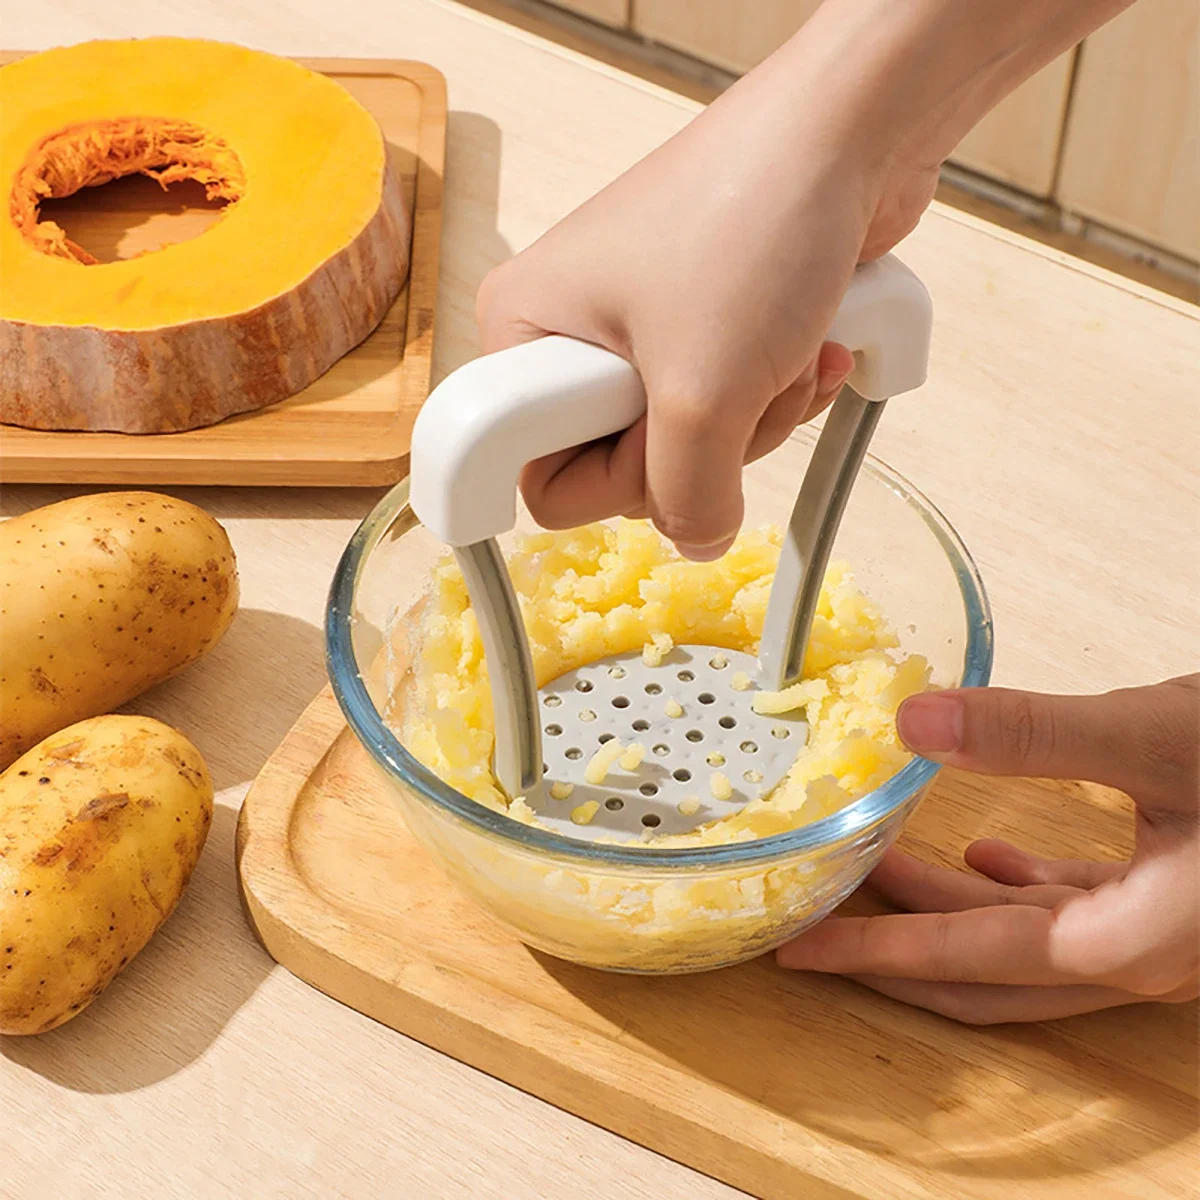 

Картофельный машер, вспомогательный пищевой машер, подходит для кухни, Картофельная смесь и другие вспомогательные продукты, такие как колокольчик красный сладкий картофель